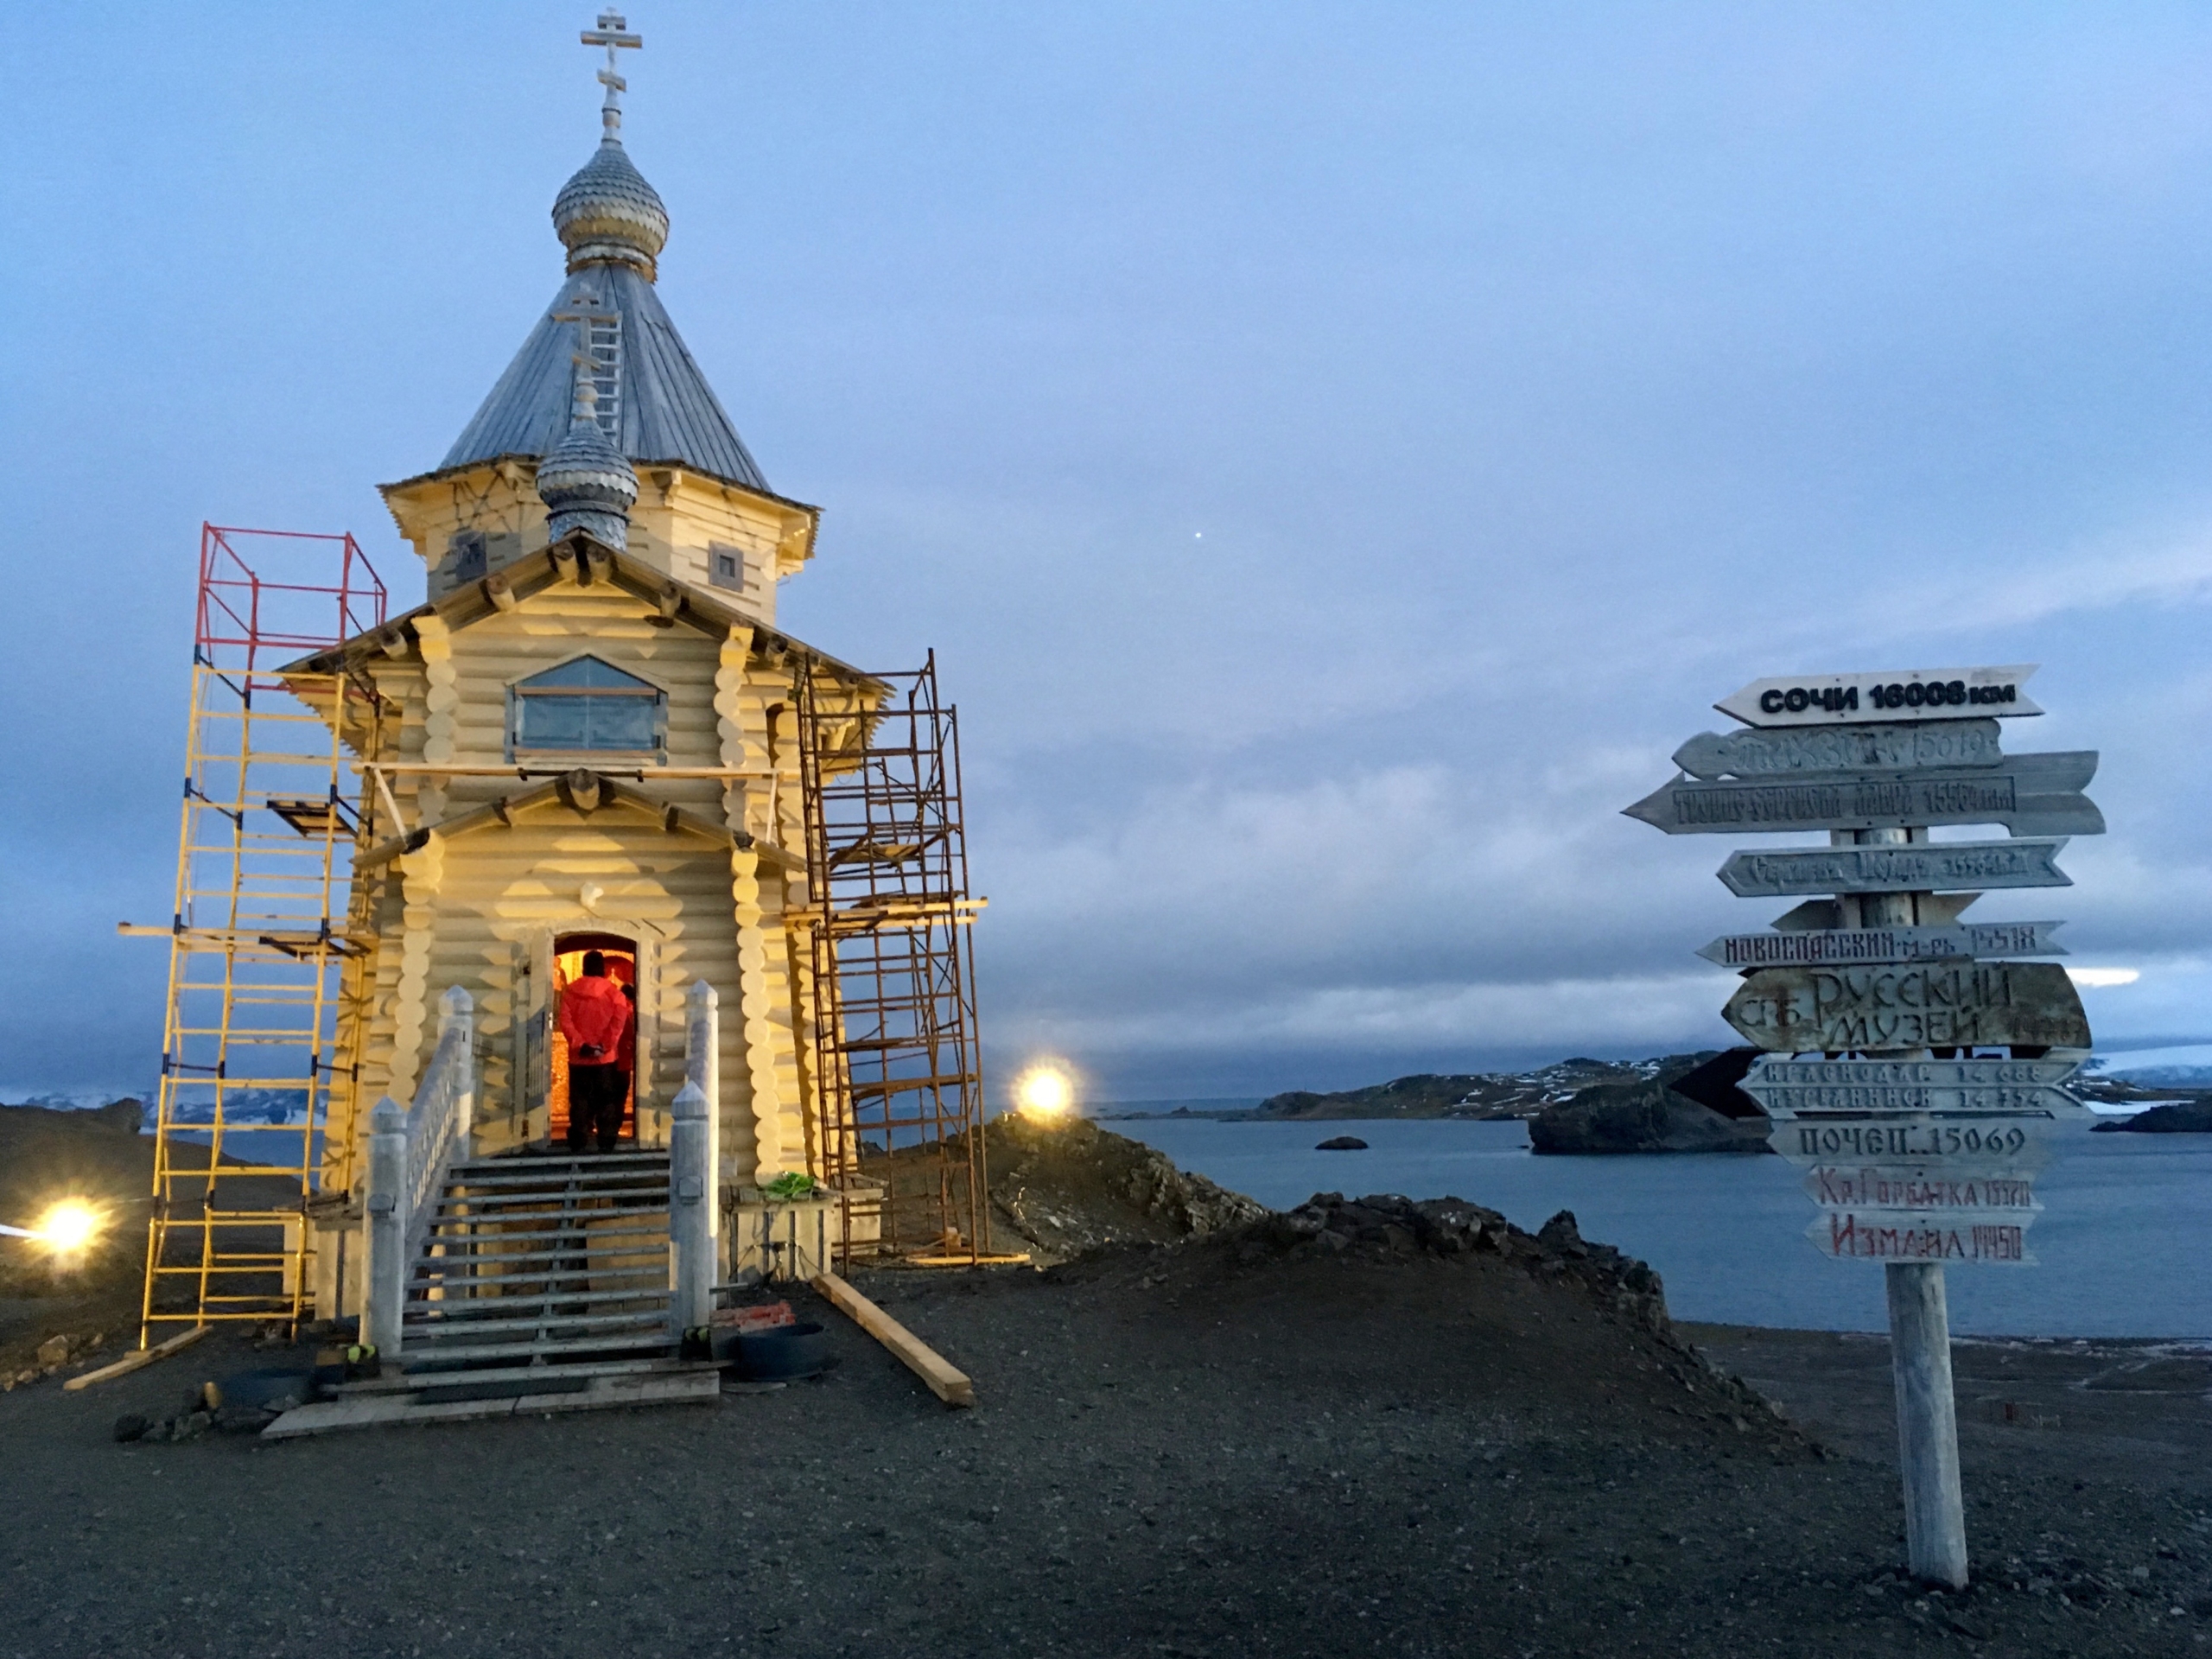 Nhà thờ Trinity, nhà thờ Chính Thống Giáo ở cực nam của thế giới, được xây dựng gần trạm nghiên cứu của Nga, trên Đảo King George, Nam Cực, vào ngày 31/01/2018. (Ảnh: Mathilde Bellenger/AFP qua Getty Images)